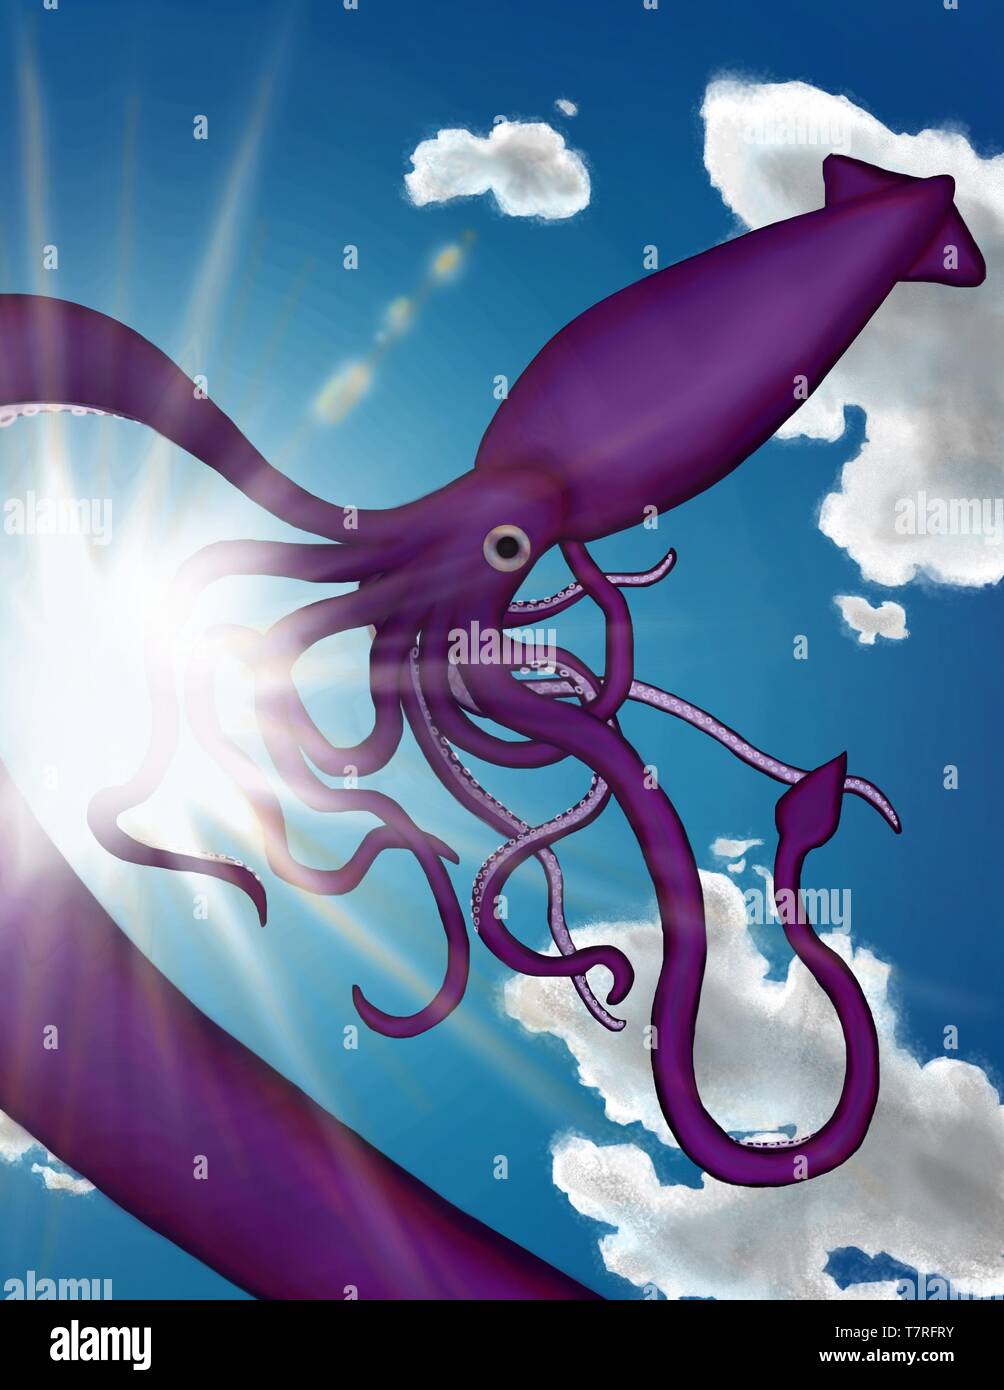 Une illustration surréaliste d'un calmar géant / kraken flottant dans le ciel Banque D'Images